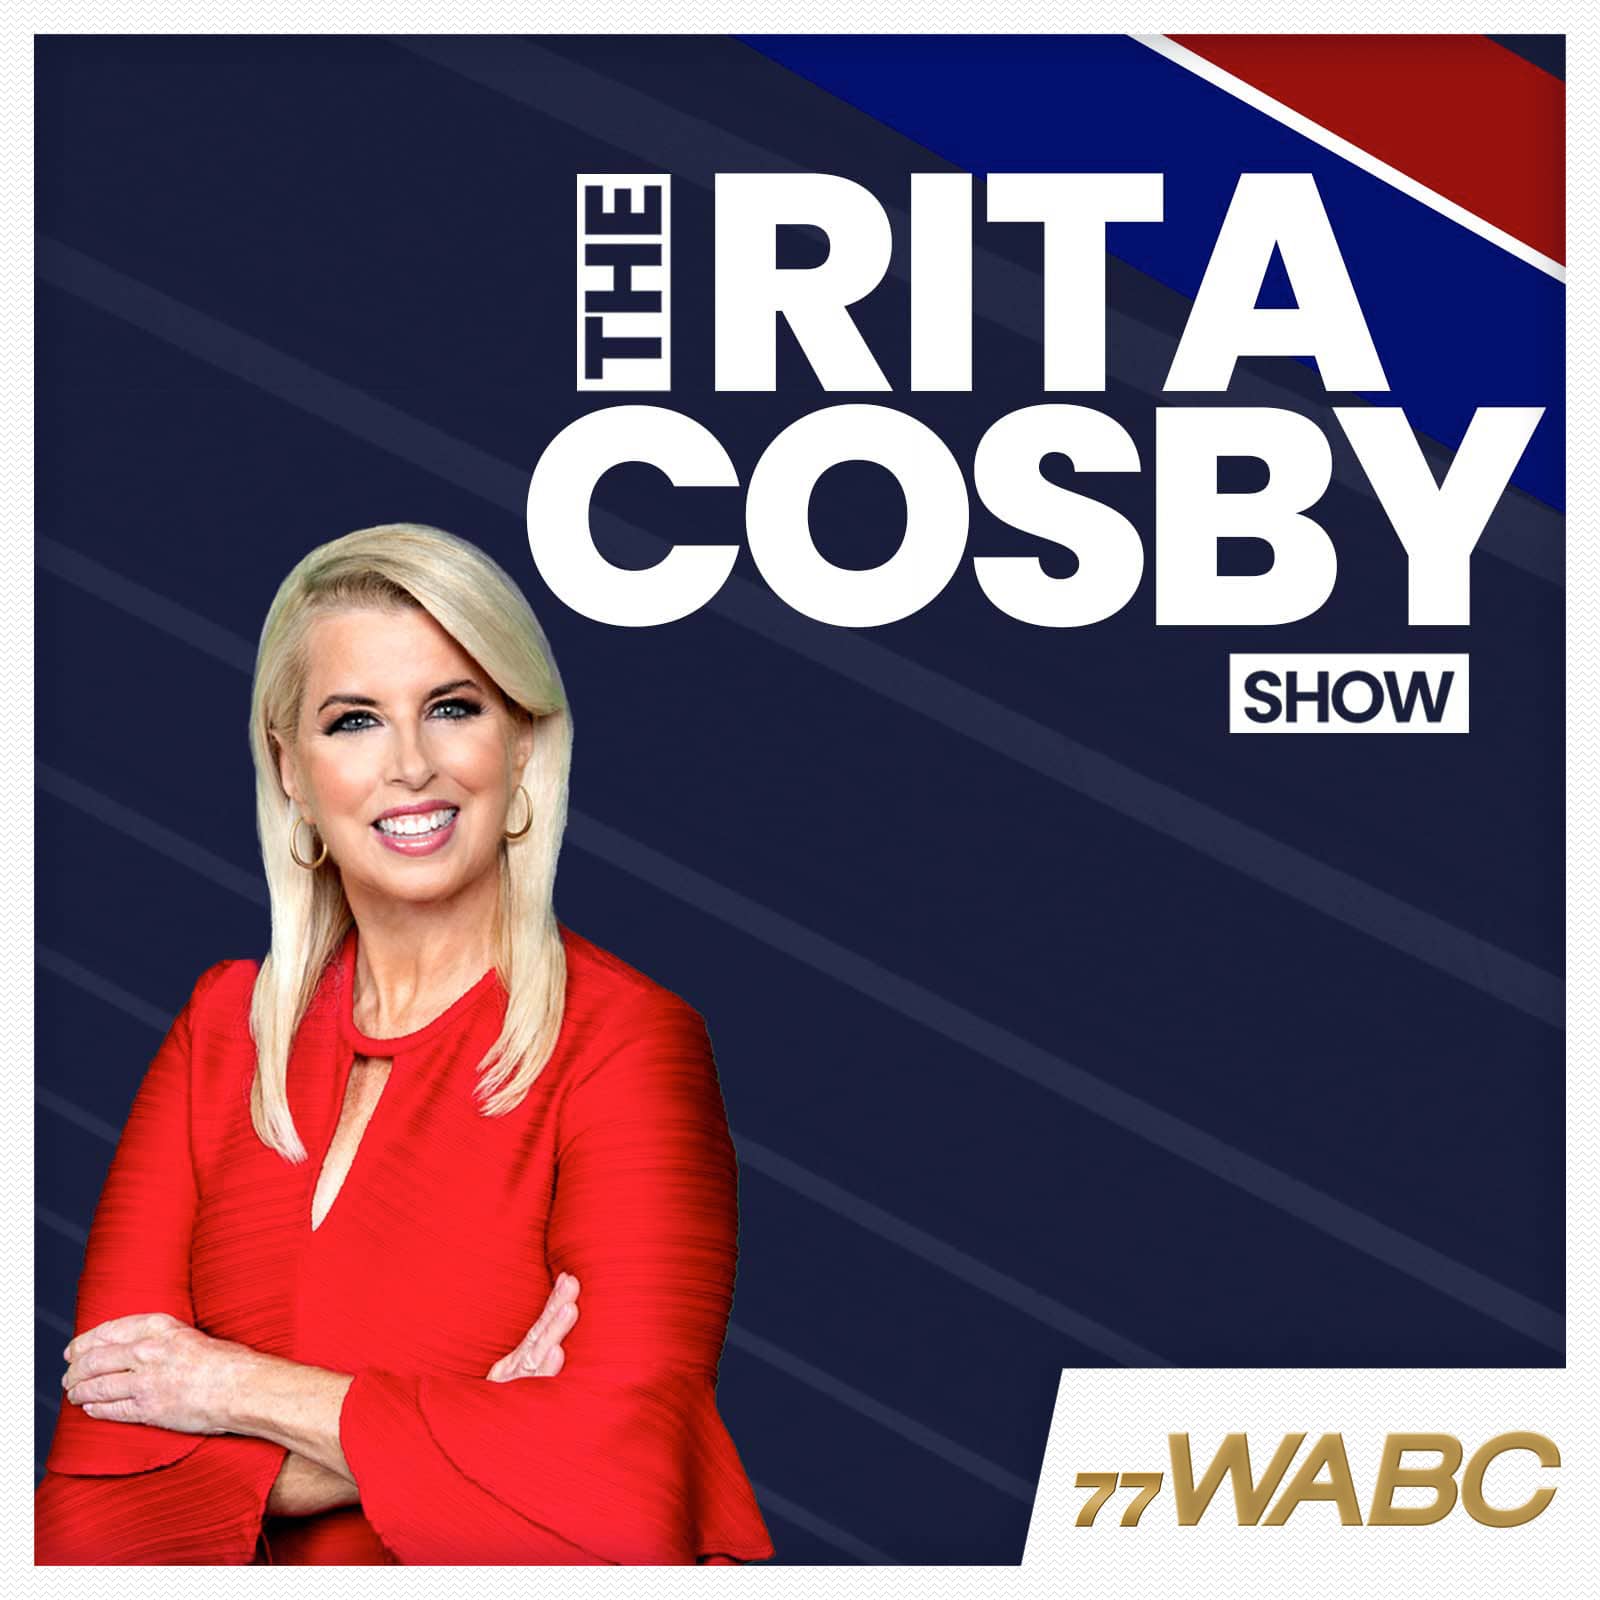 rita-cosby-podcast-new-logo-252